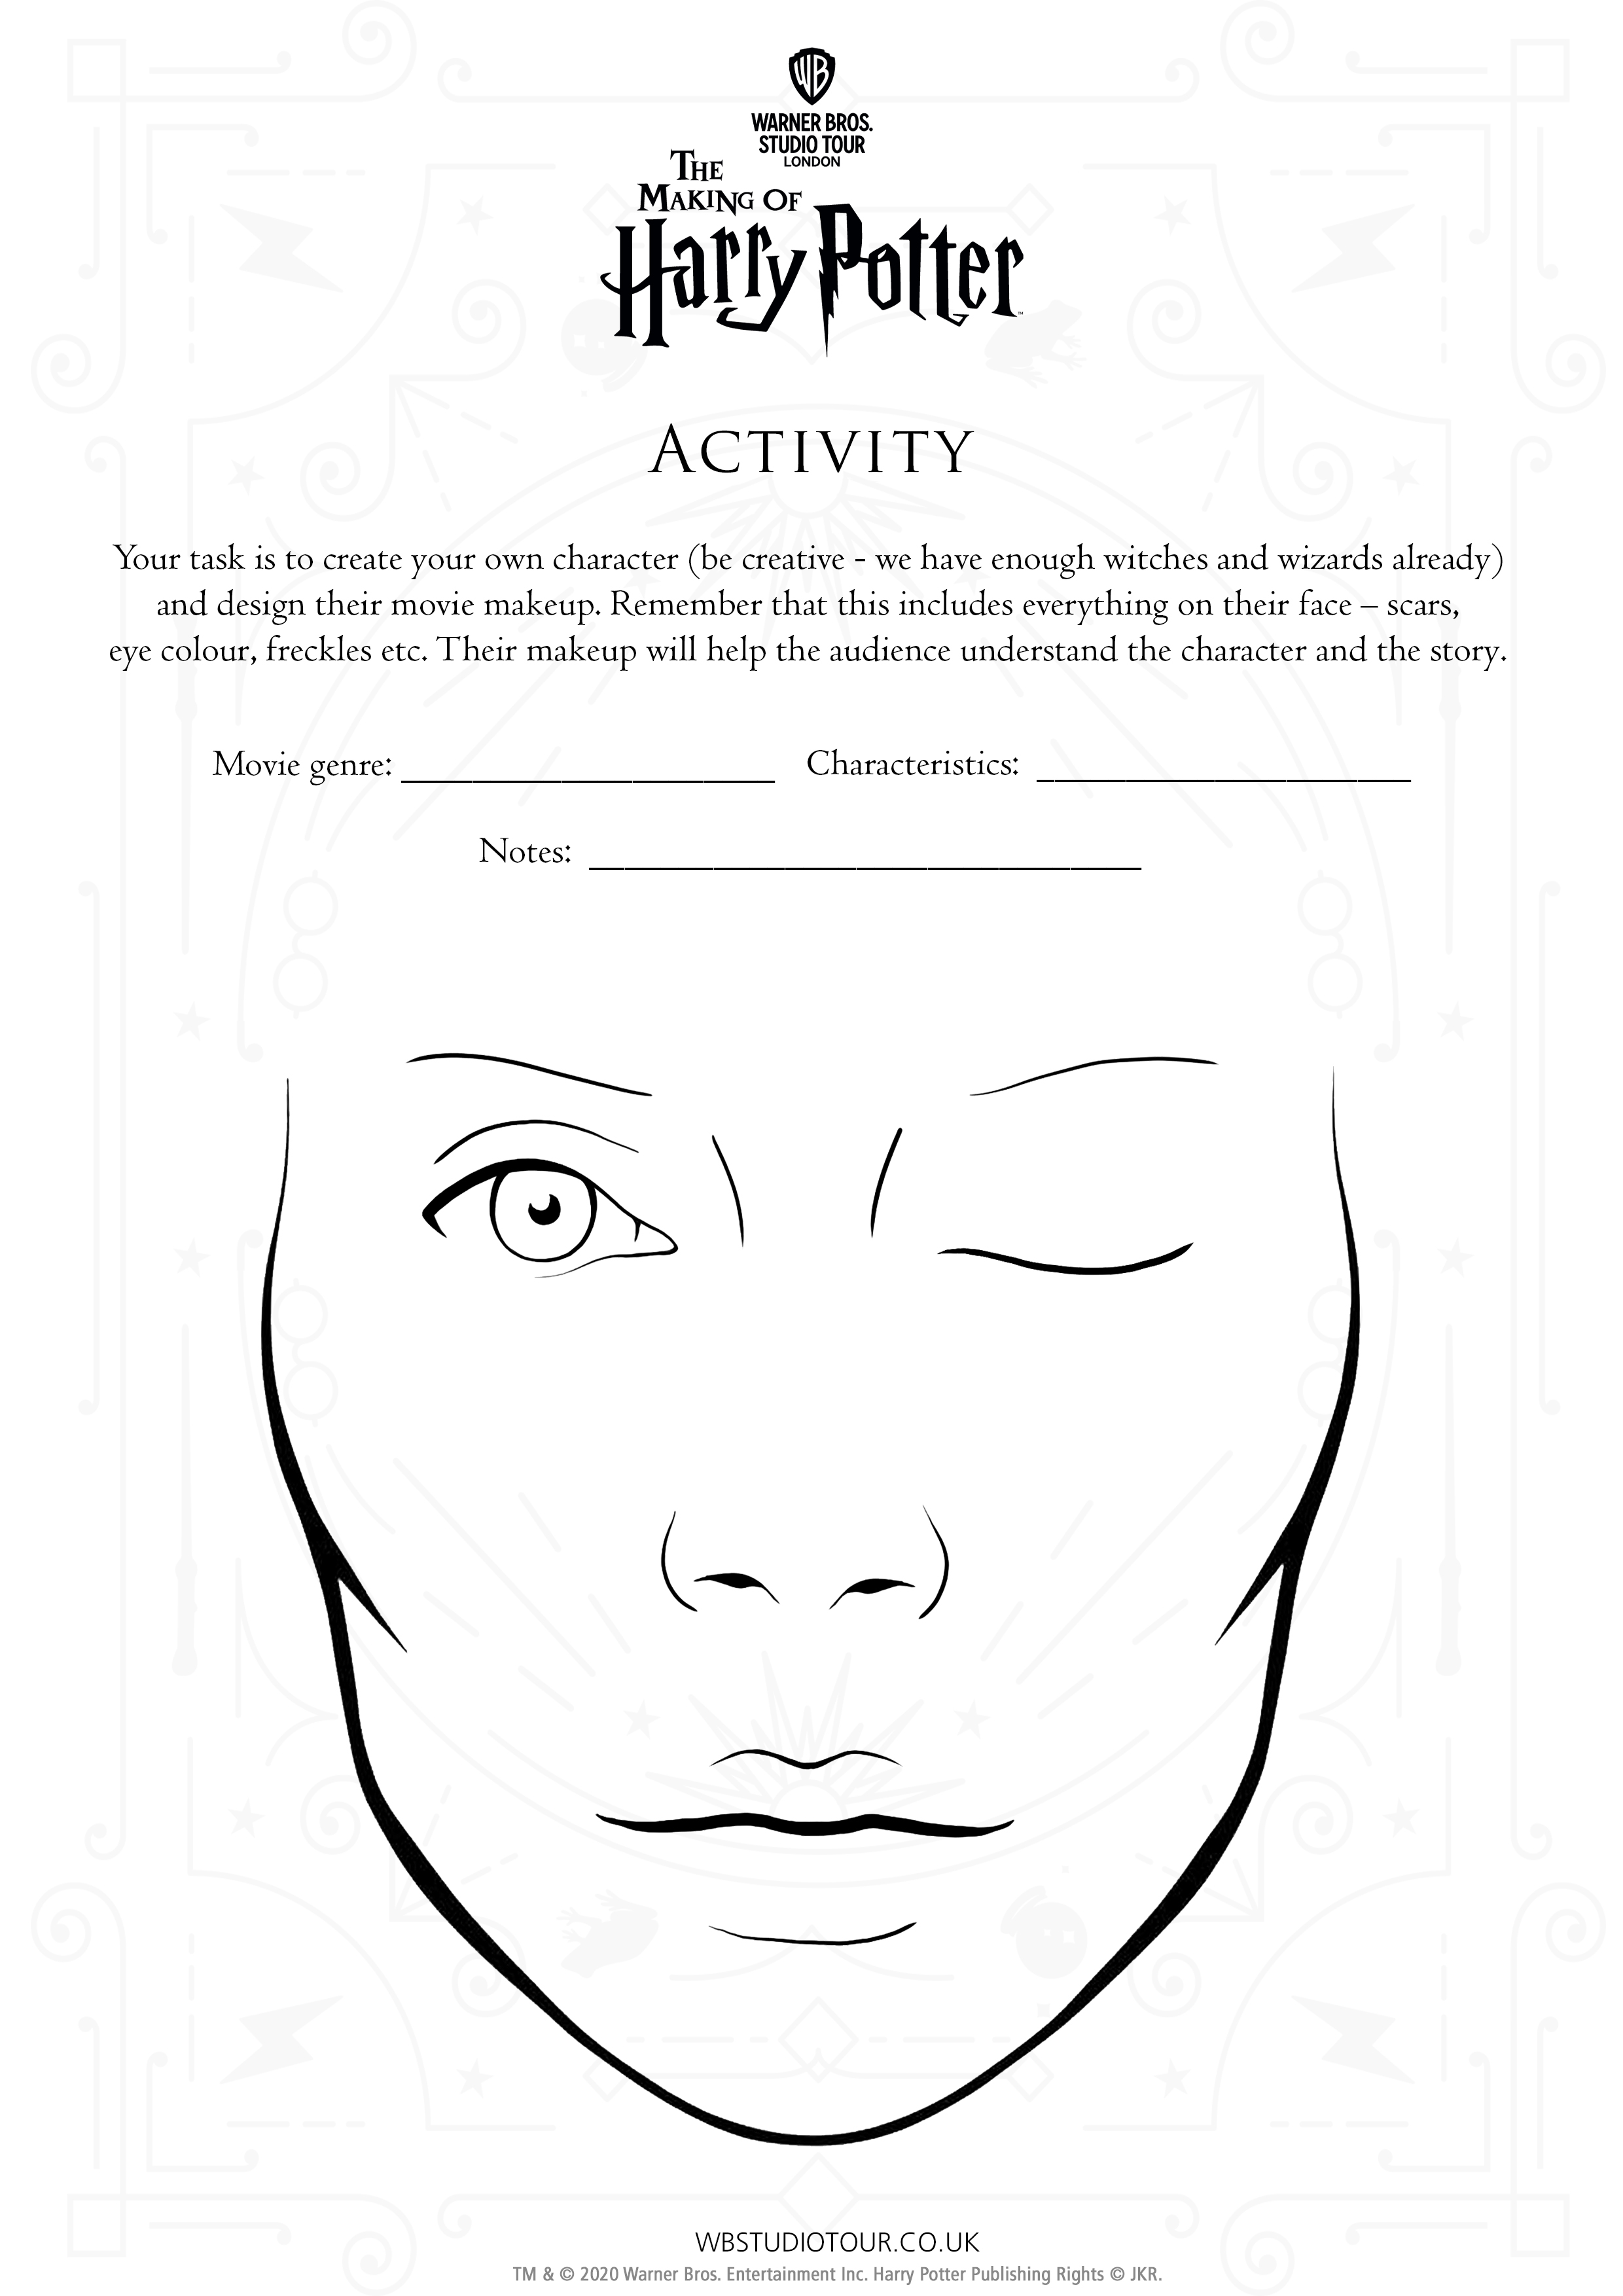 at-home-activity-sheet-movie-makeup-thumbnail-page-2.jpg